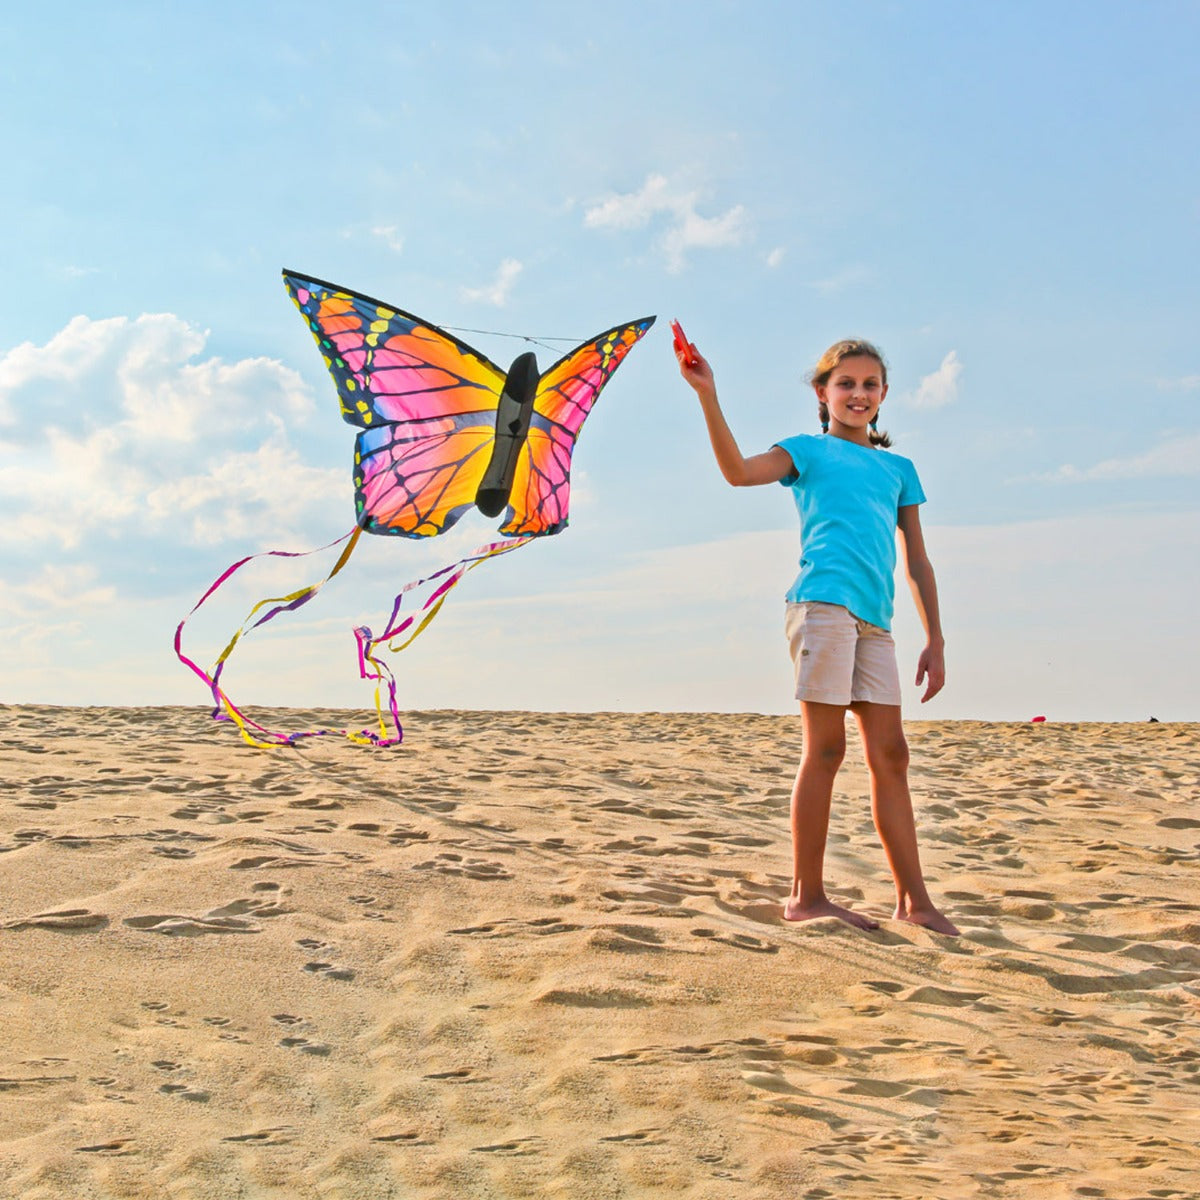 HQ Kinderdrachen Einleiner Drachen HQ Butterfly Kite Ruby L Schmetterling Flugdrache